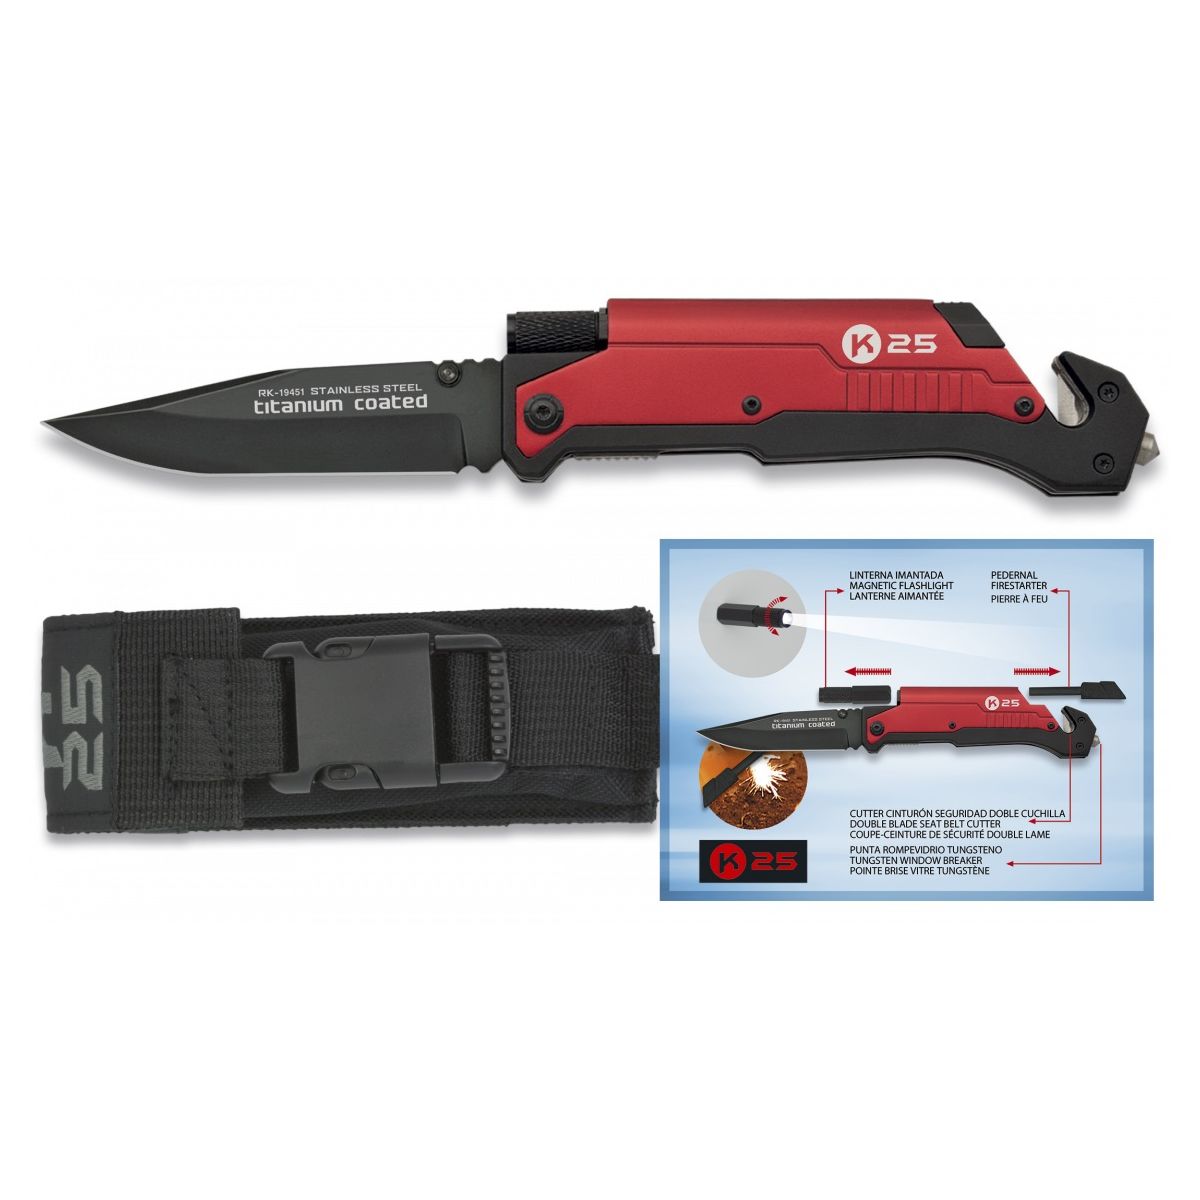 Pocket Knife 19451 with firestarter and flashlight RED K25 19451 L-11